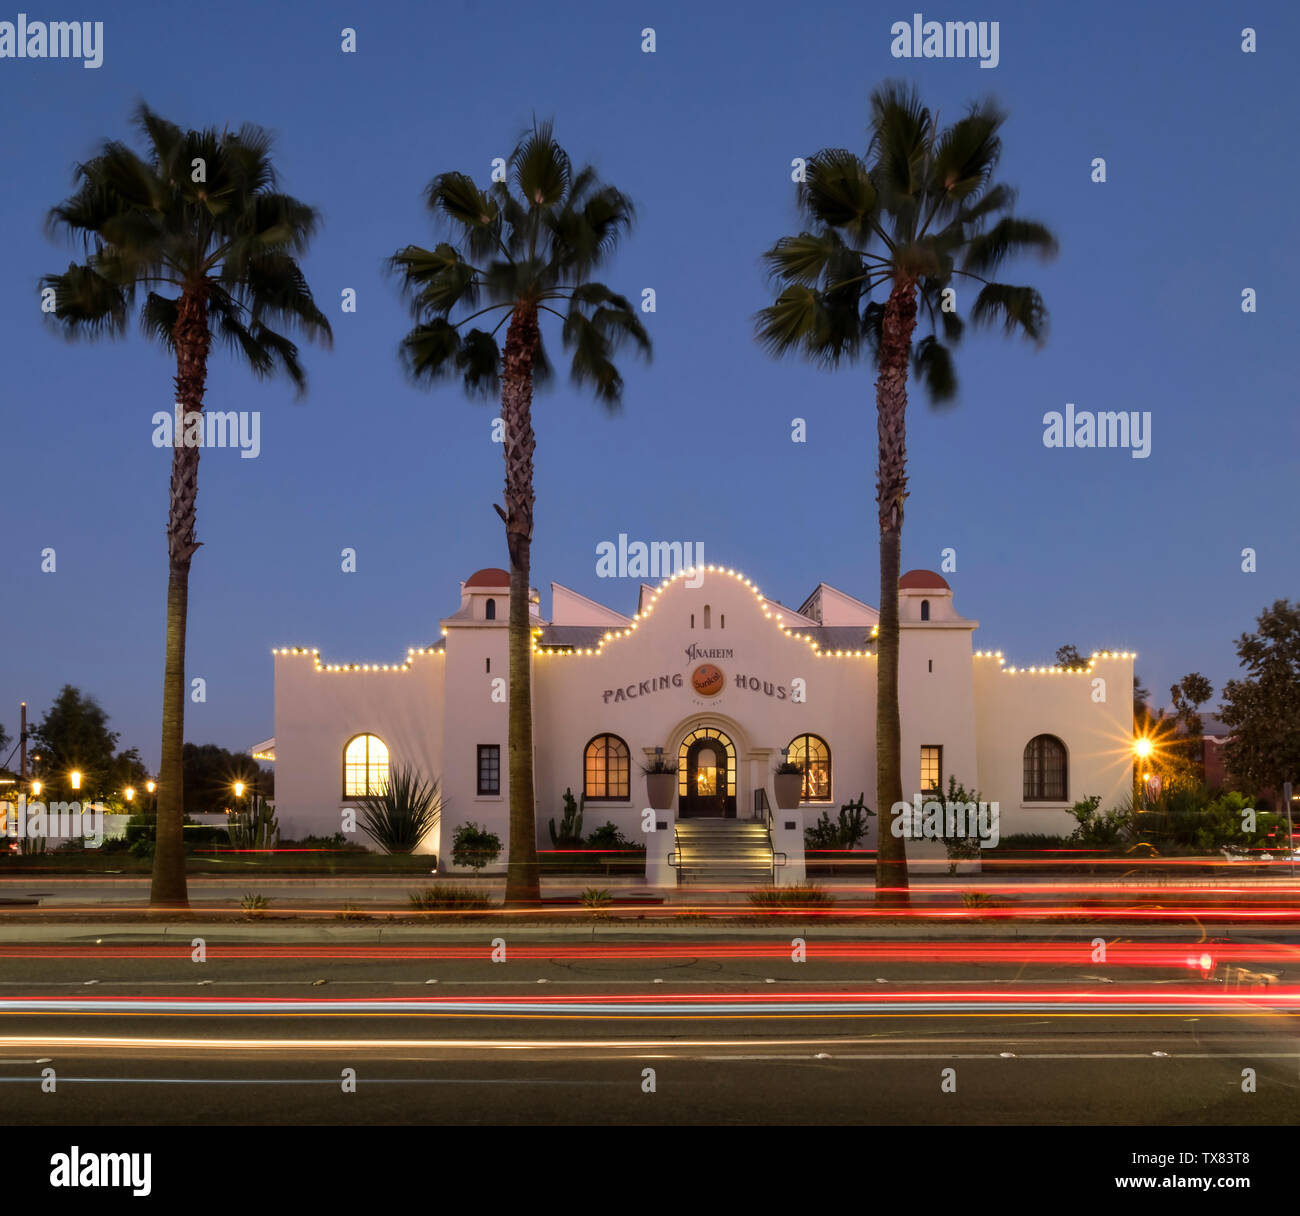 L'emballage de nuit, Anaheim, Los Angeles, Californie, USA Banque D'Images